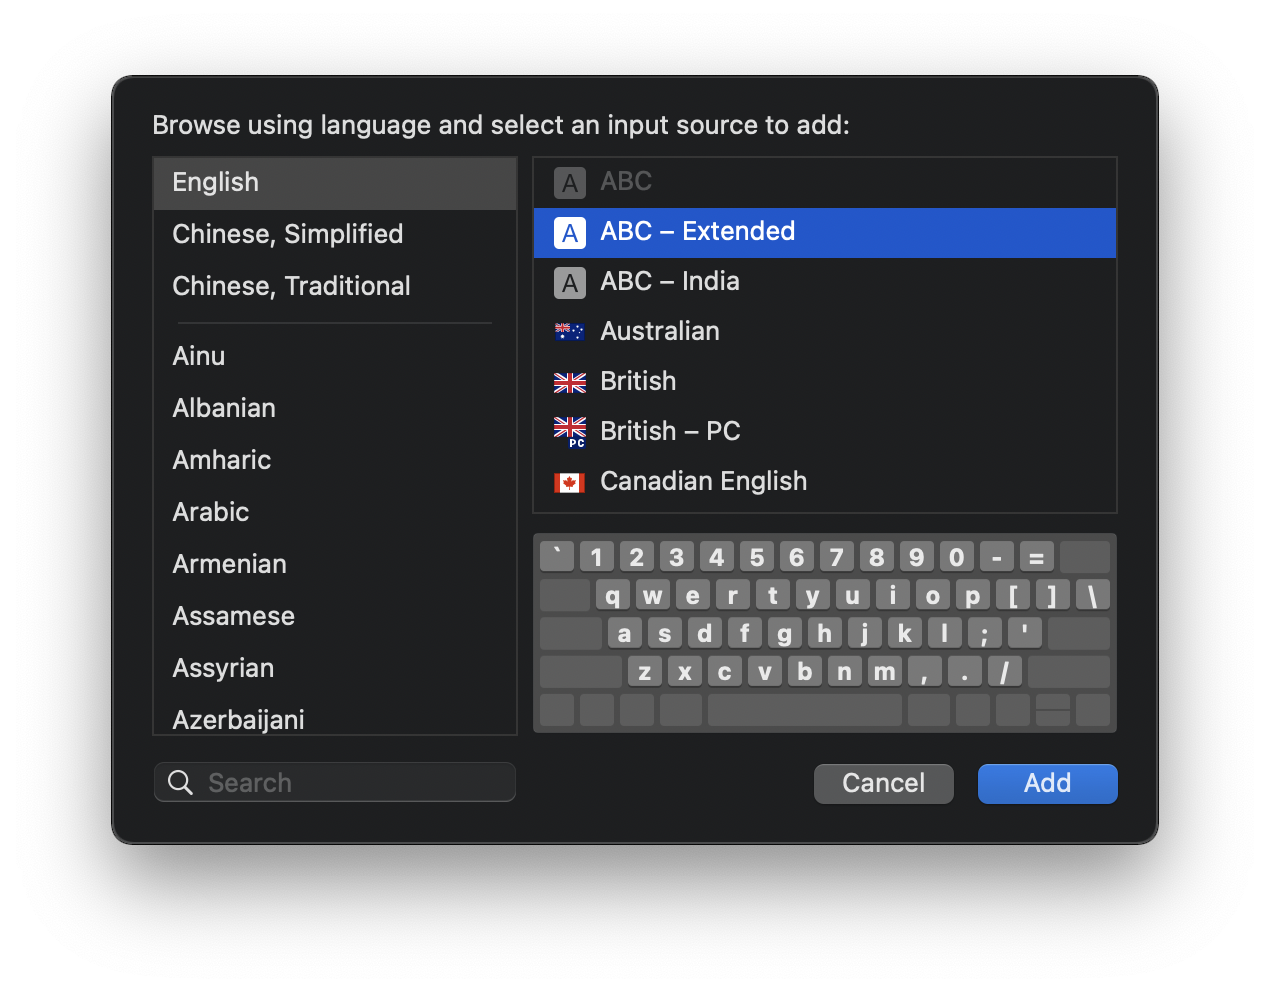 默认英语输入法设置为 ABC - Extended